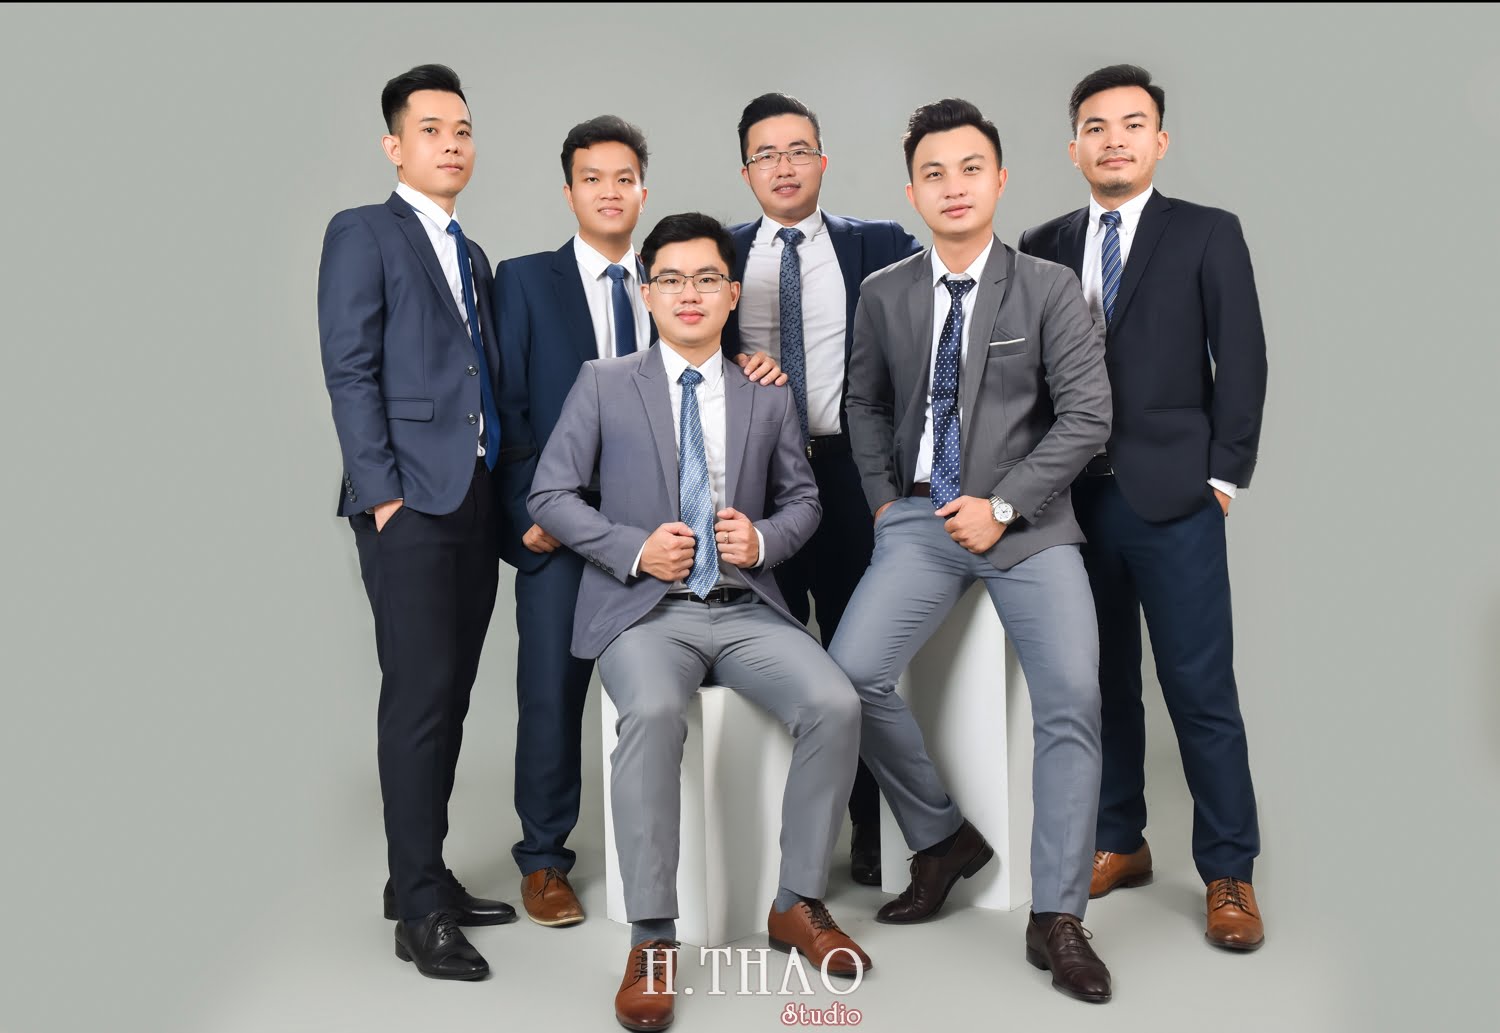 Anh profile cong ty 12 - #3 concept chụp ảnh công ty chuyên nghiệp nhất hiện nay – HThao Studio